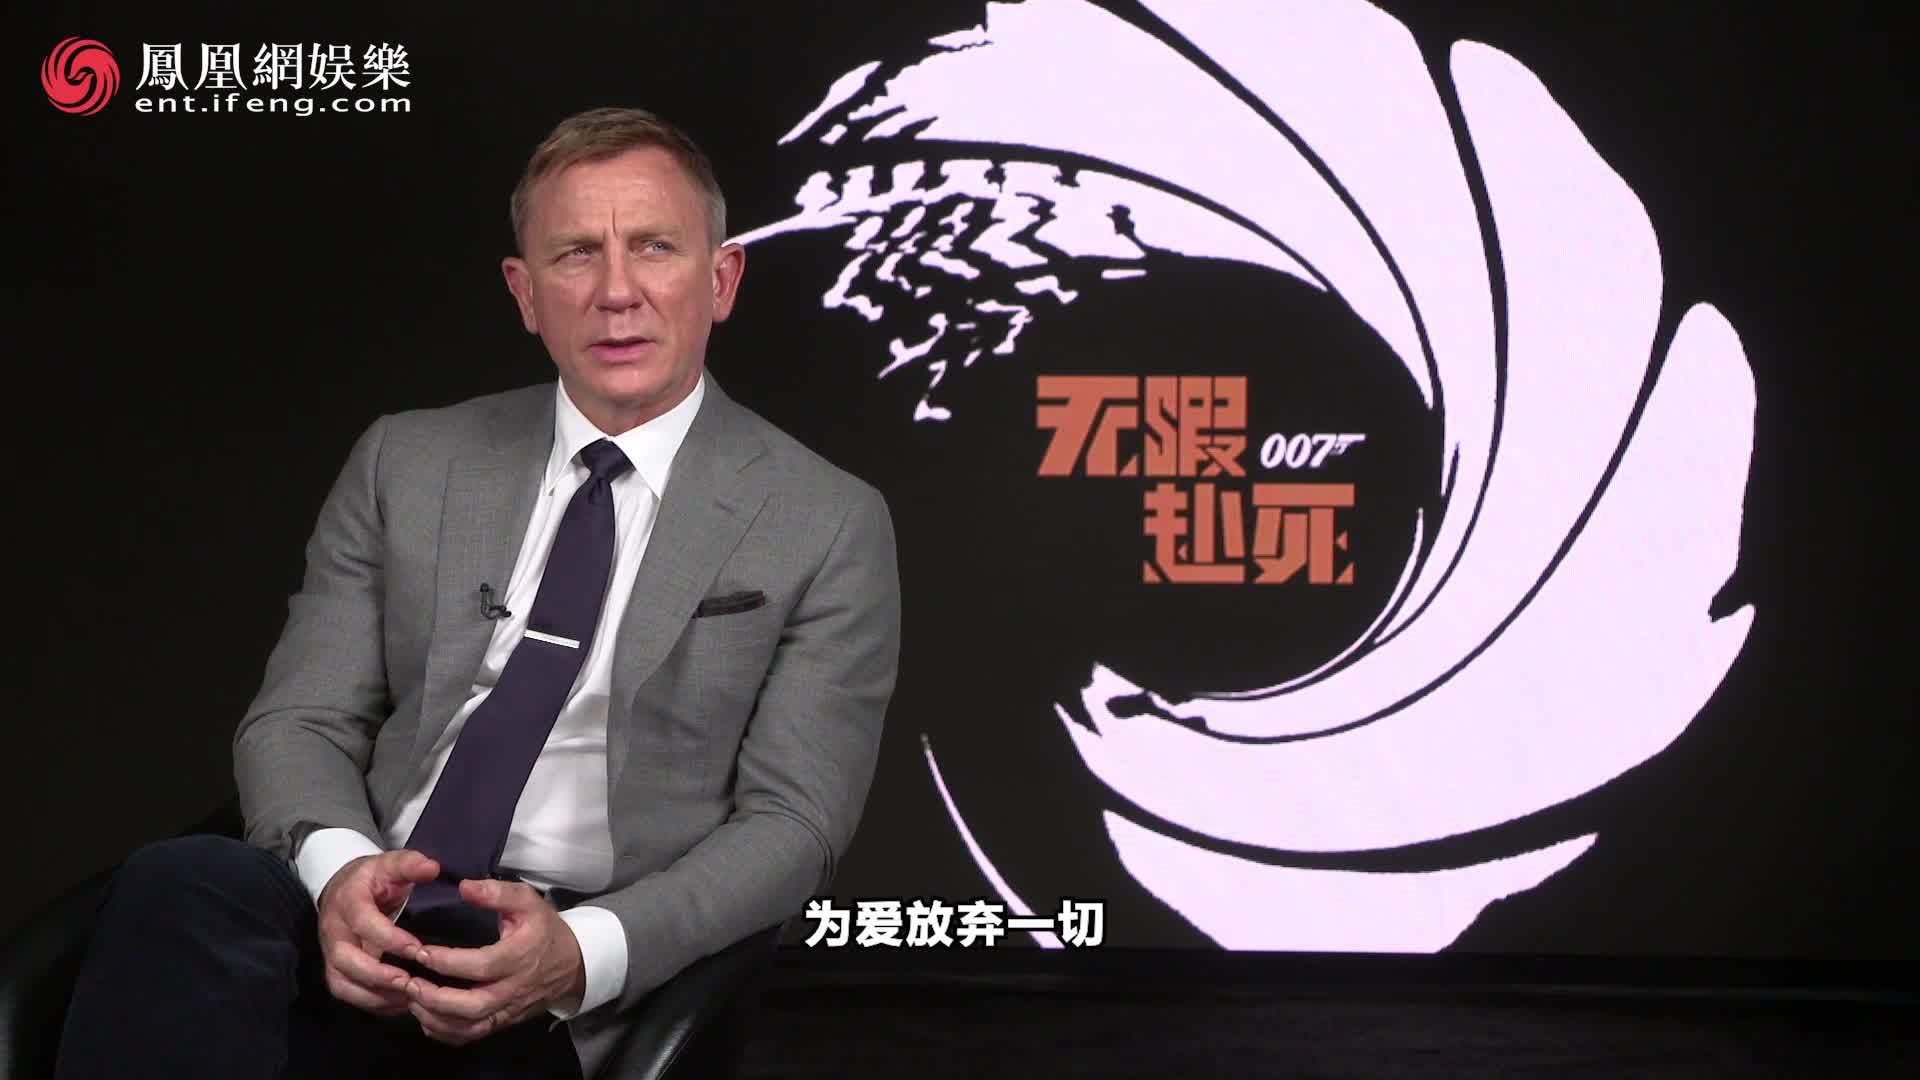 凤凰网娱乐专访《007:无暇赴死》主演丹尼尔·克雷格